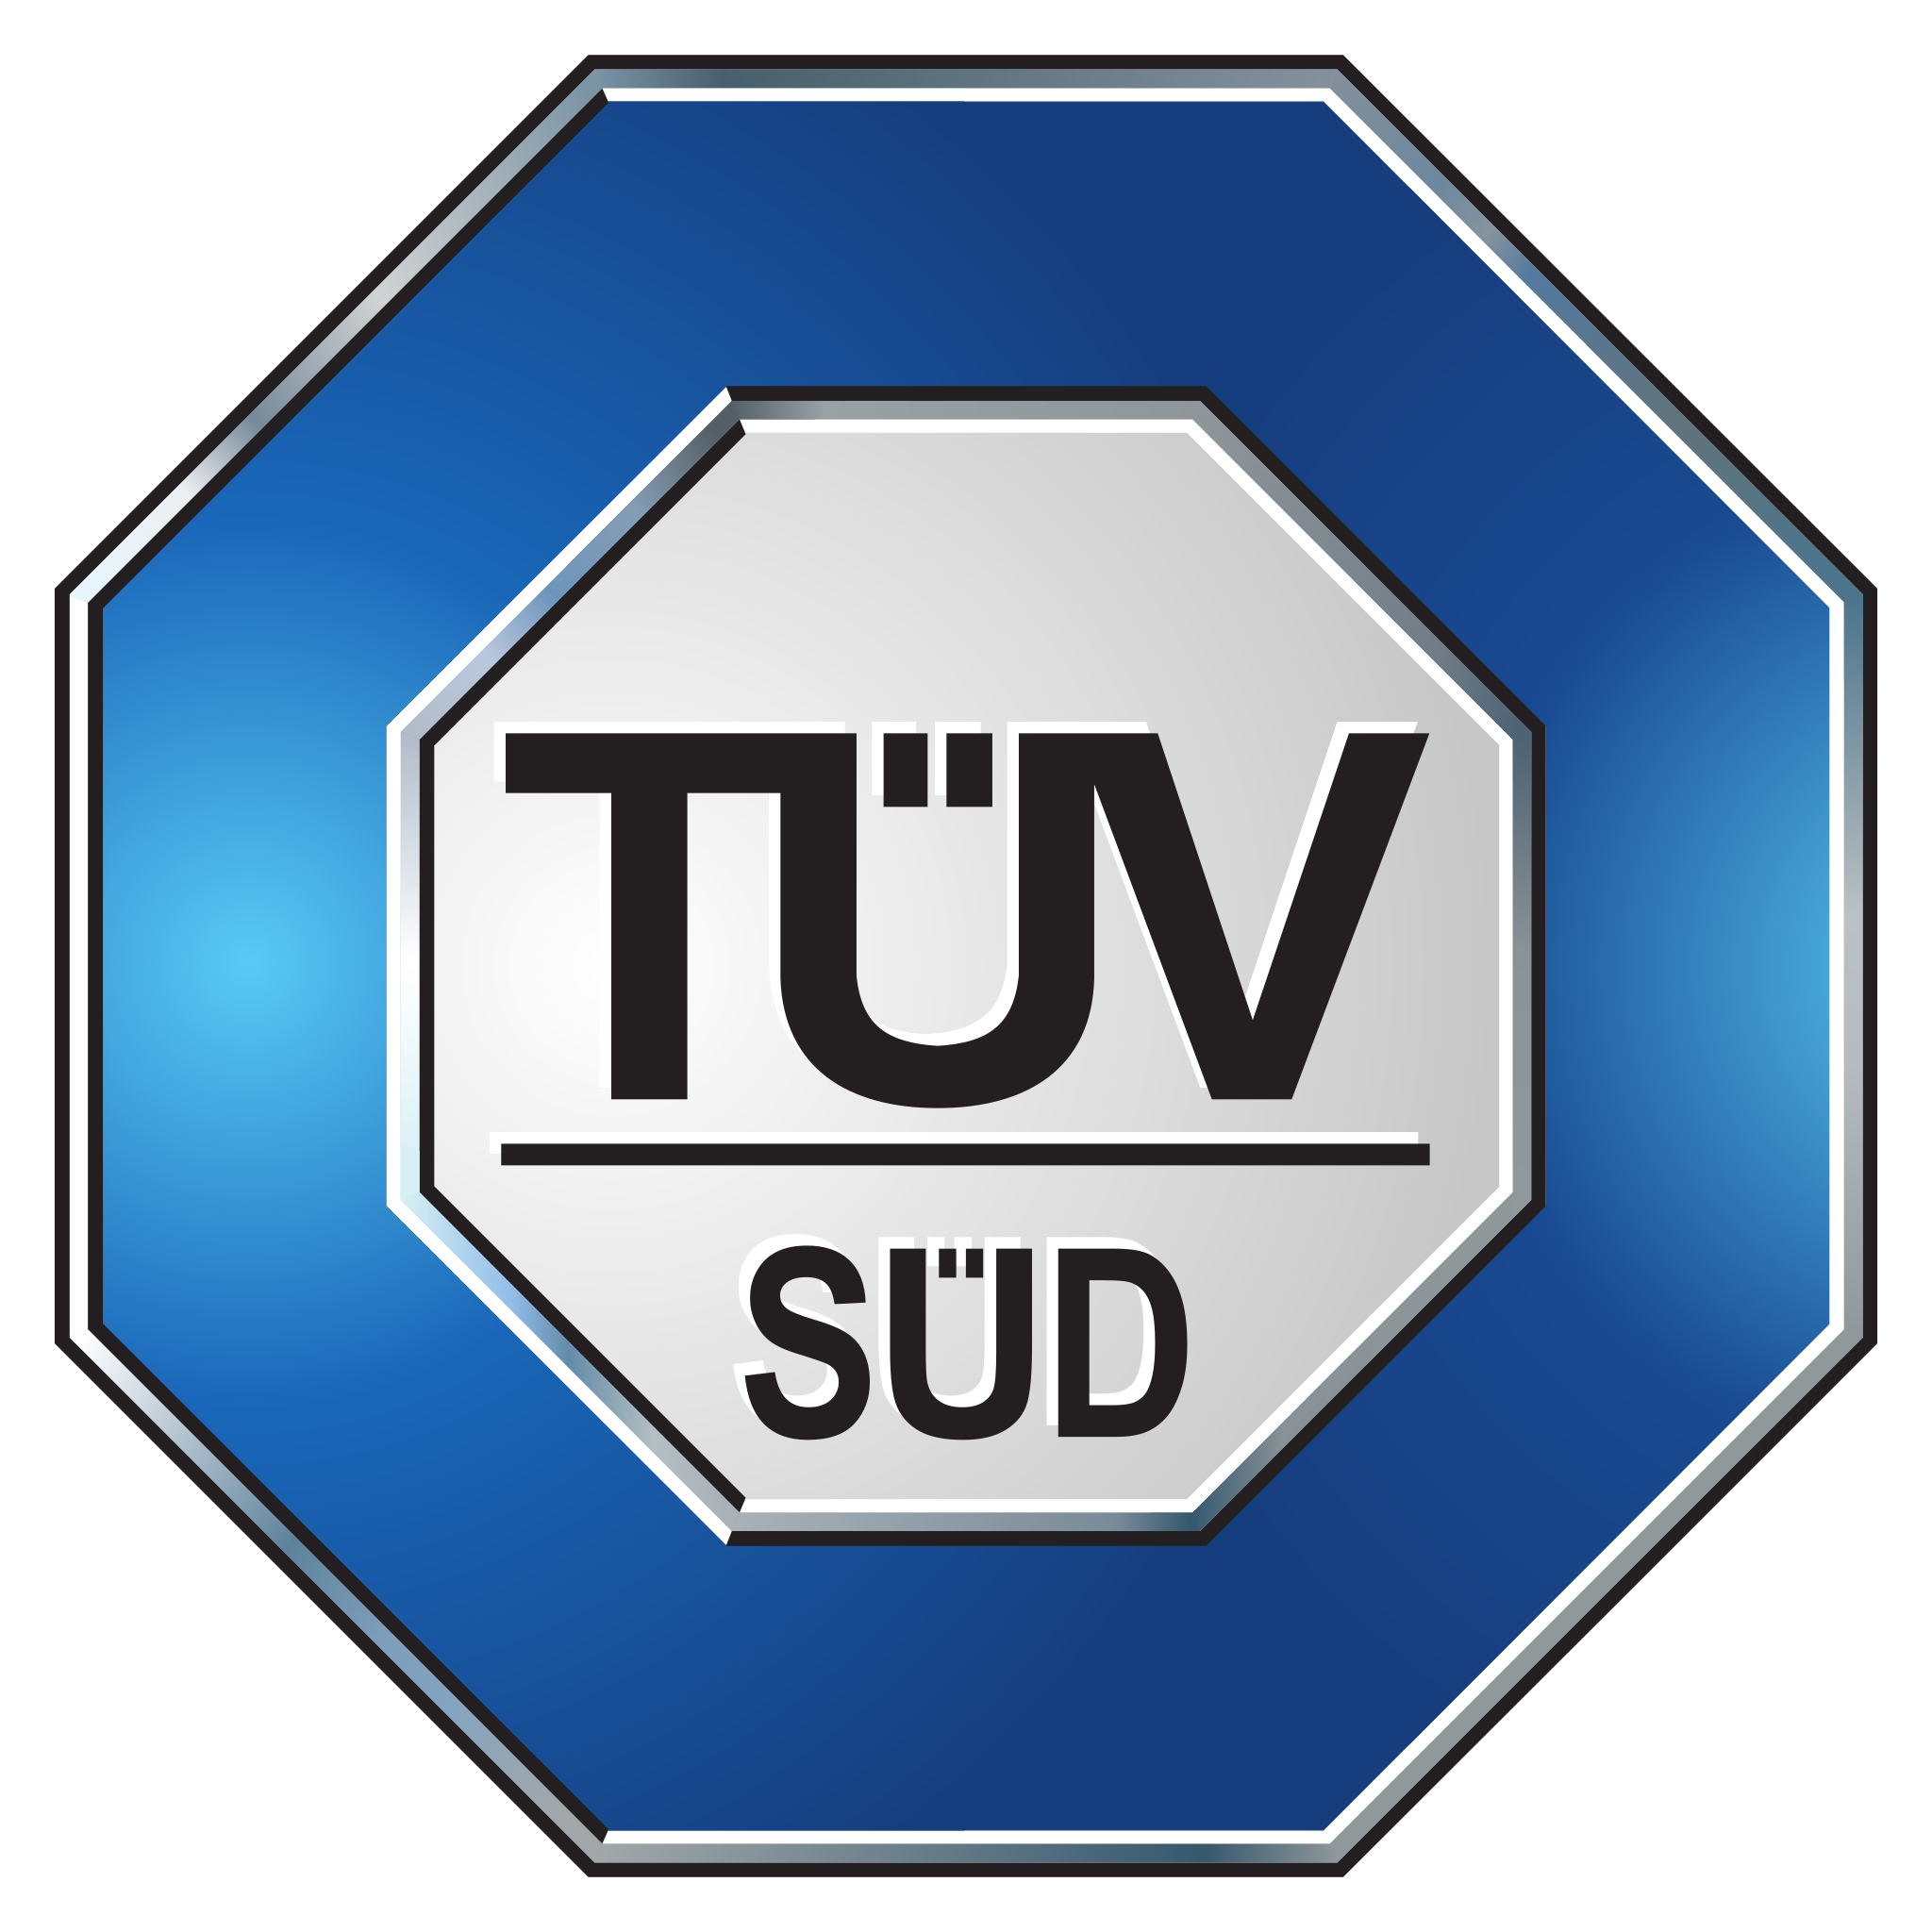 TÜV_Süd_logo.svg